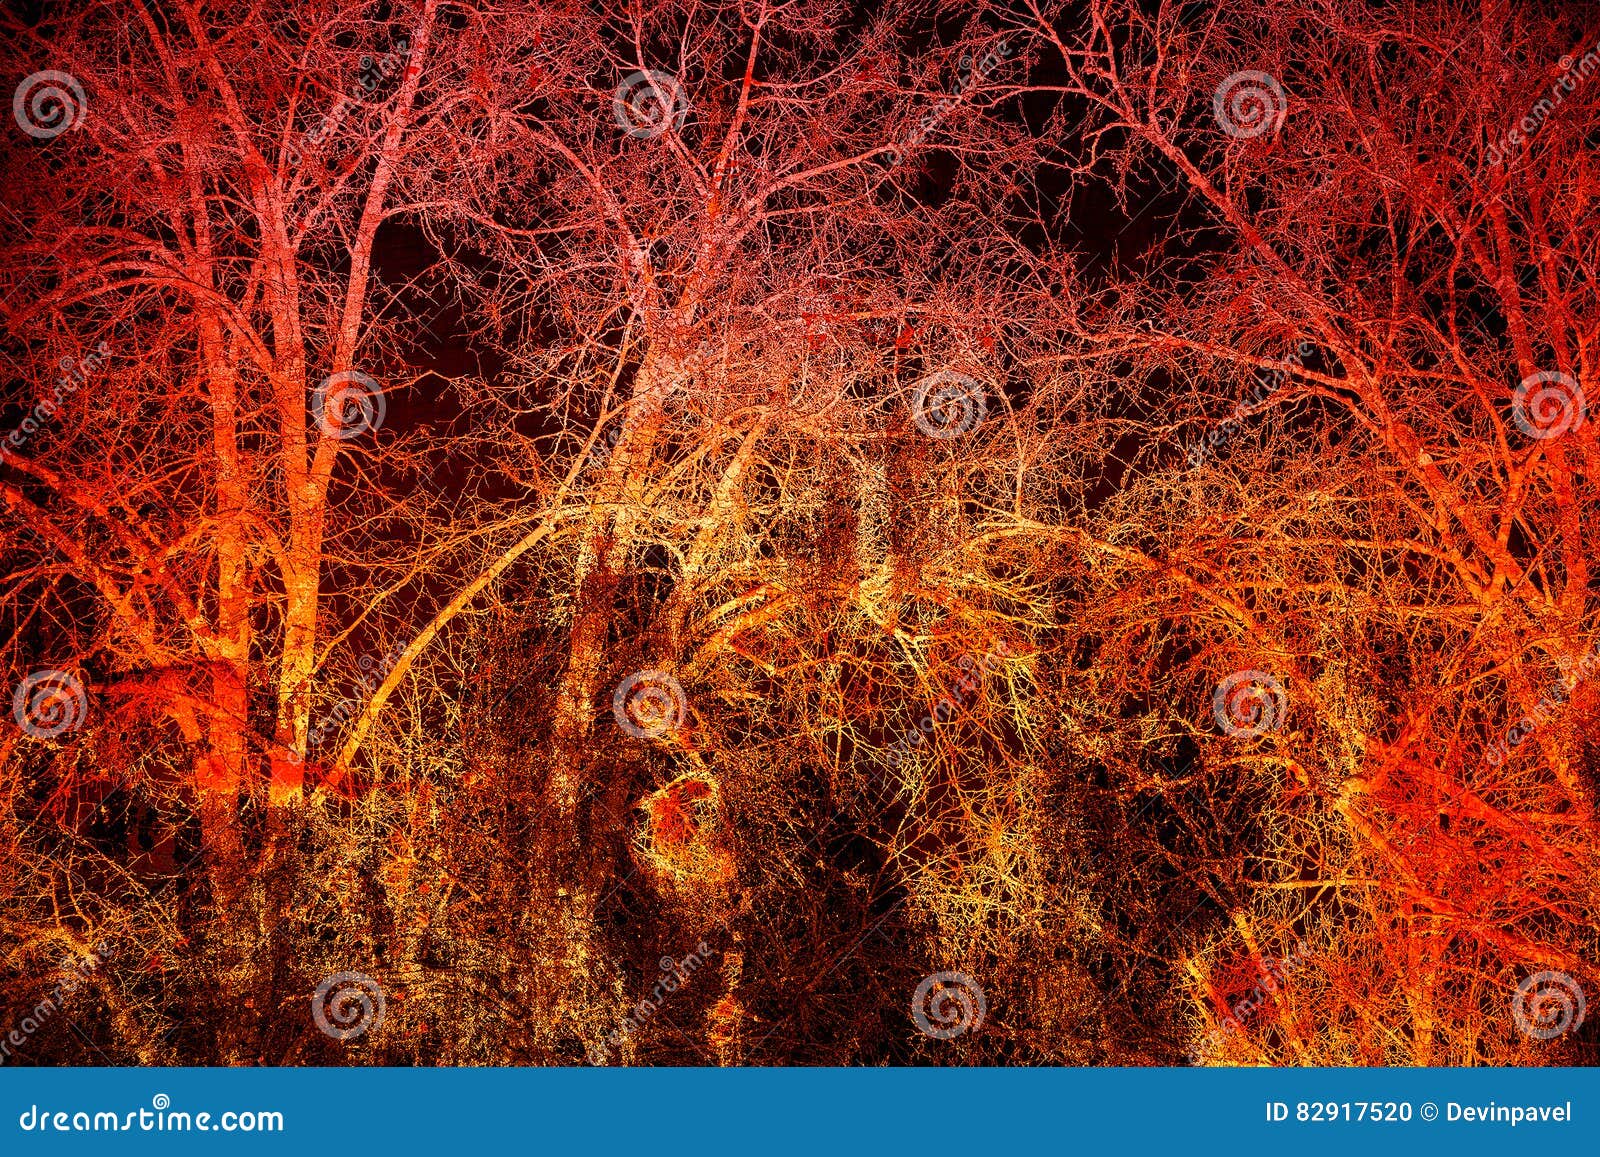 Nền tối trừu tượng. Nhánh cây trên nền đen và đỏ: Hãy khám phá những tác phẩm nghệ thuật sáng tạo, độc đáo với nền tối trừu tượng và hình ảnh nhánh cây đen đỏ. Điểm nhấn đầy ấn tượng của những chi tiết trên nền đen sẽ khiến bạn không thể rời mắt khỏi bức tranh.